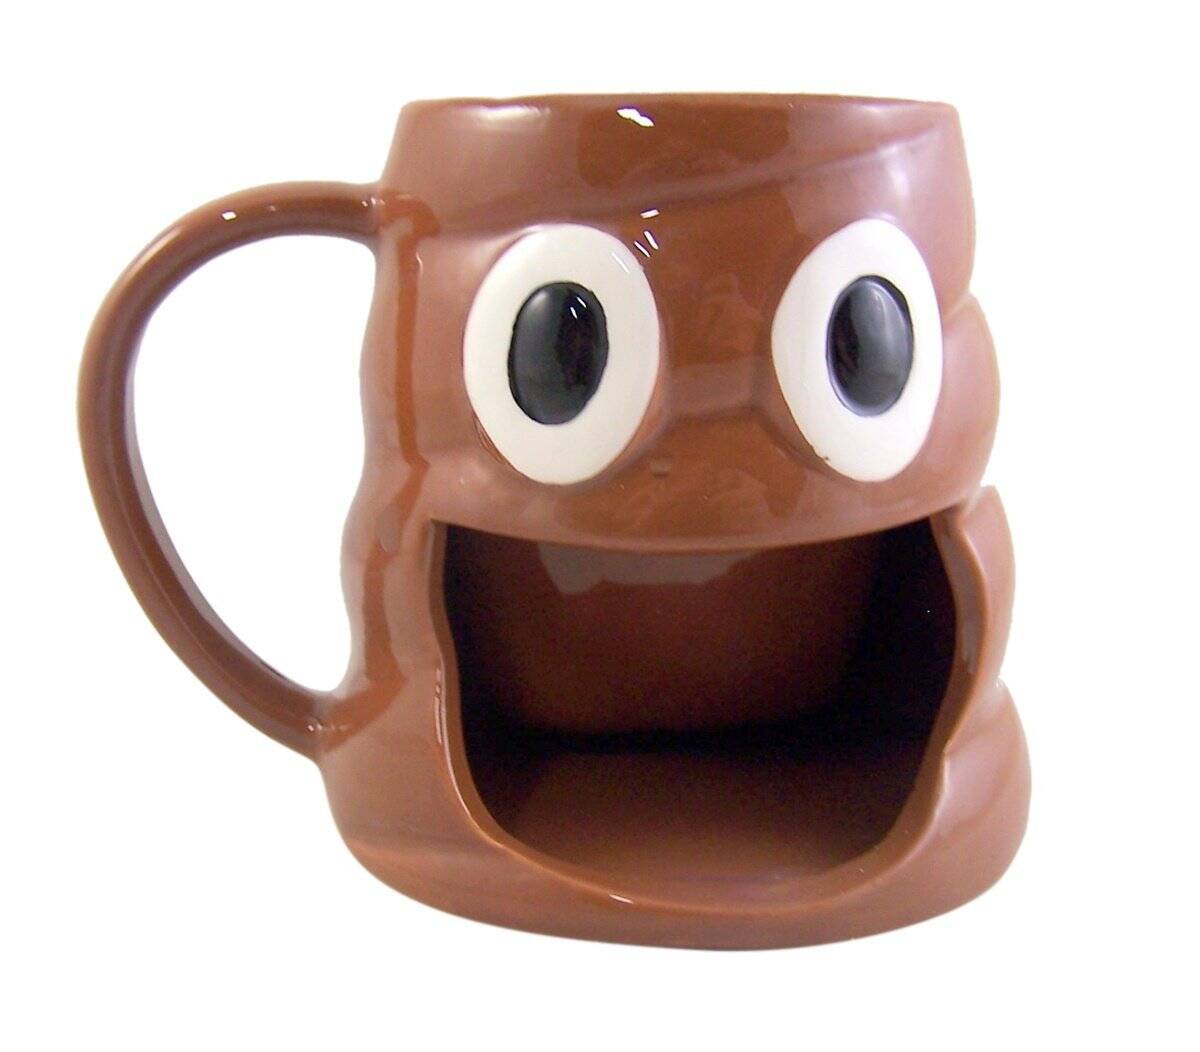 Poop Emoji Coffee Mug with Cookie Holder - //coolthings.us